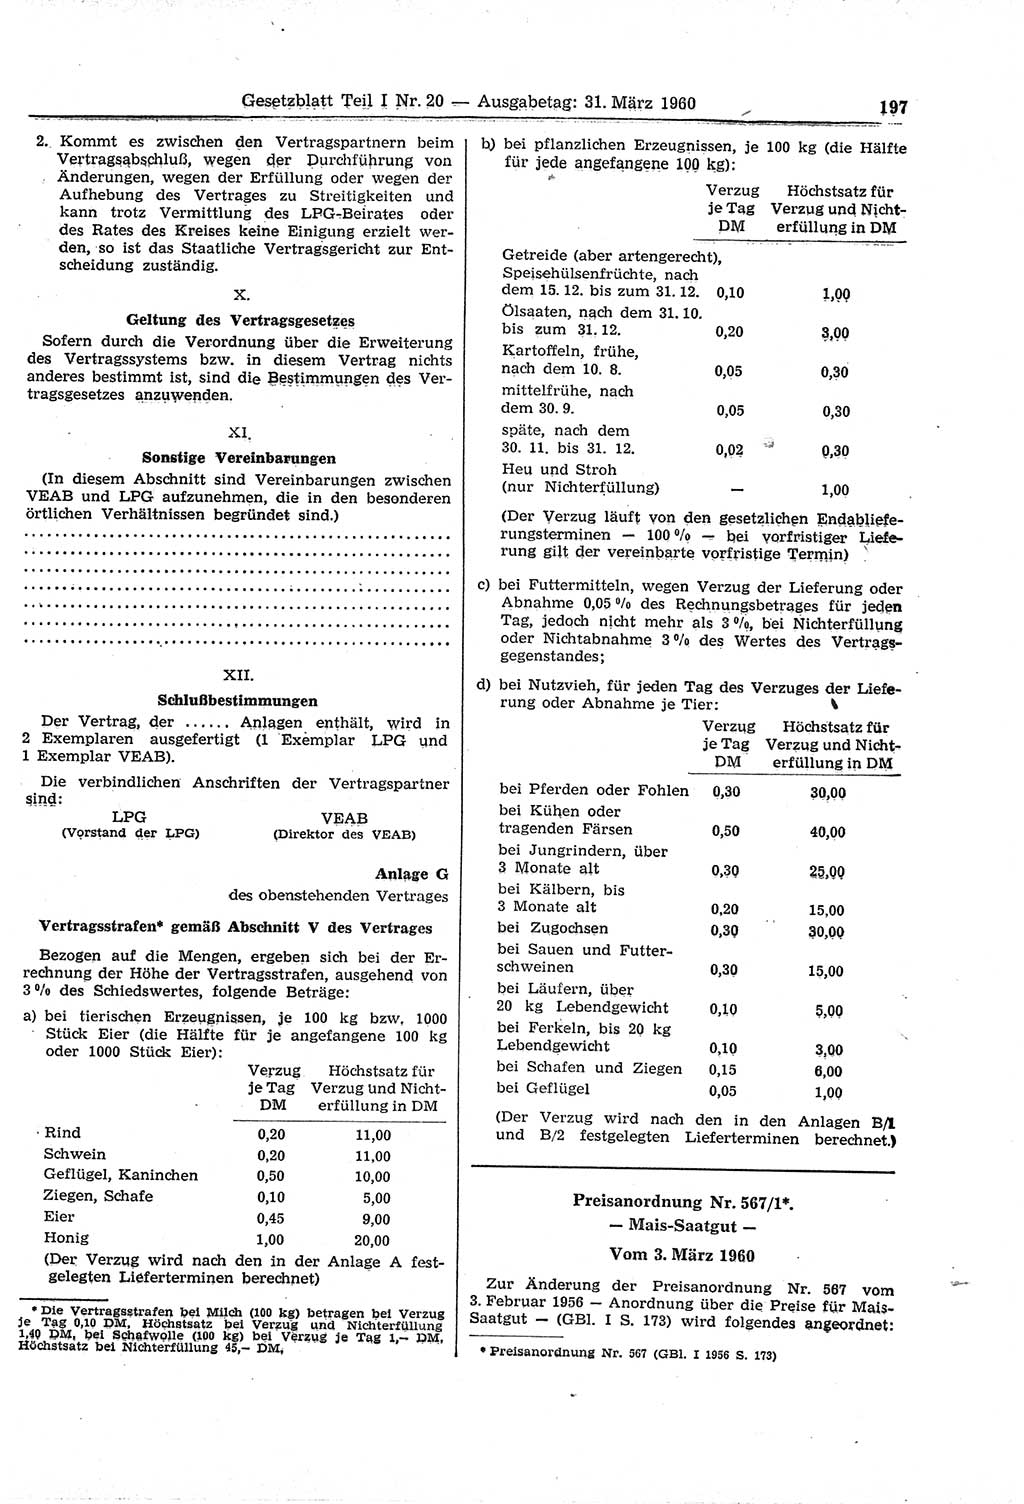 Gesetzblatt (GBl.) der Deutschen Demokratischen Republik (DDR) Teil Ⅰ 1960, Seite 197 (GBl. DDR Ⅰ 1960, S. 197)